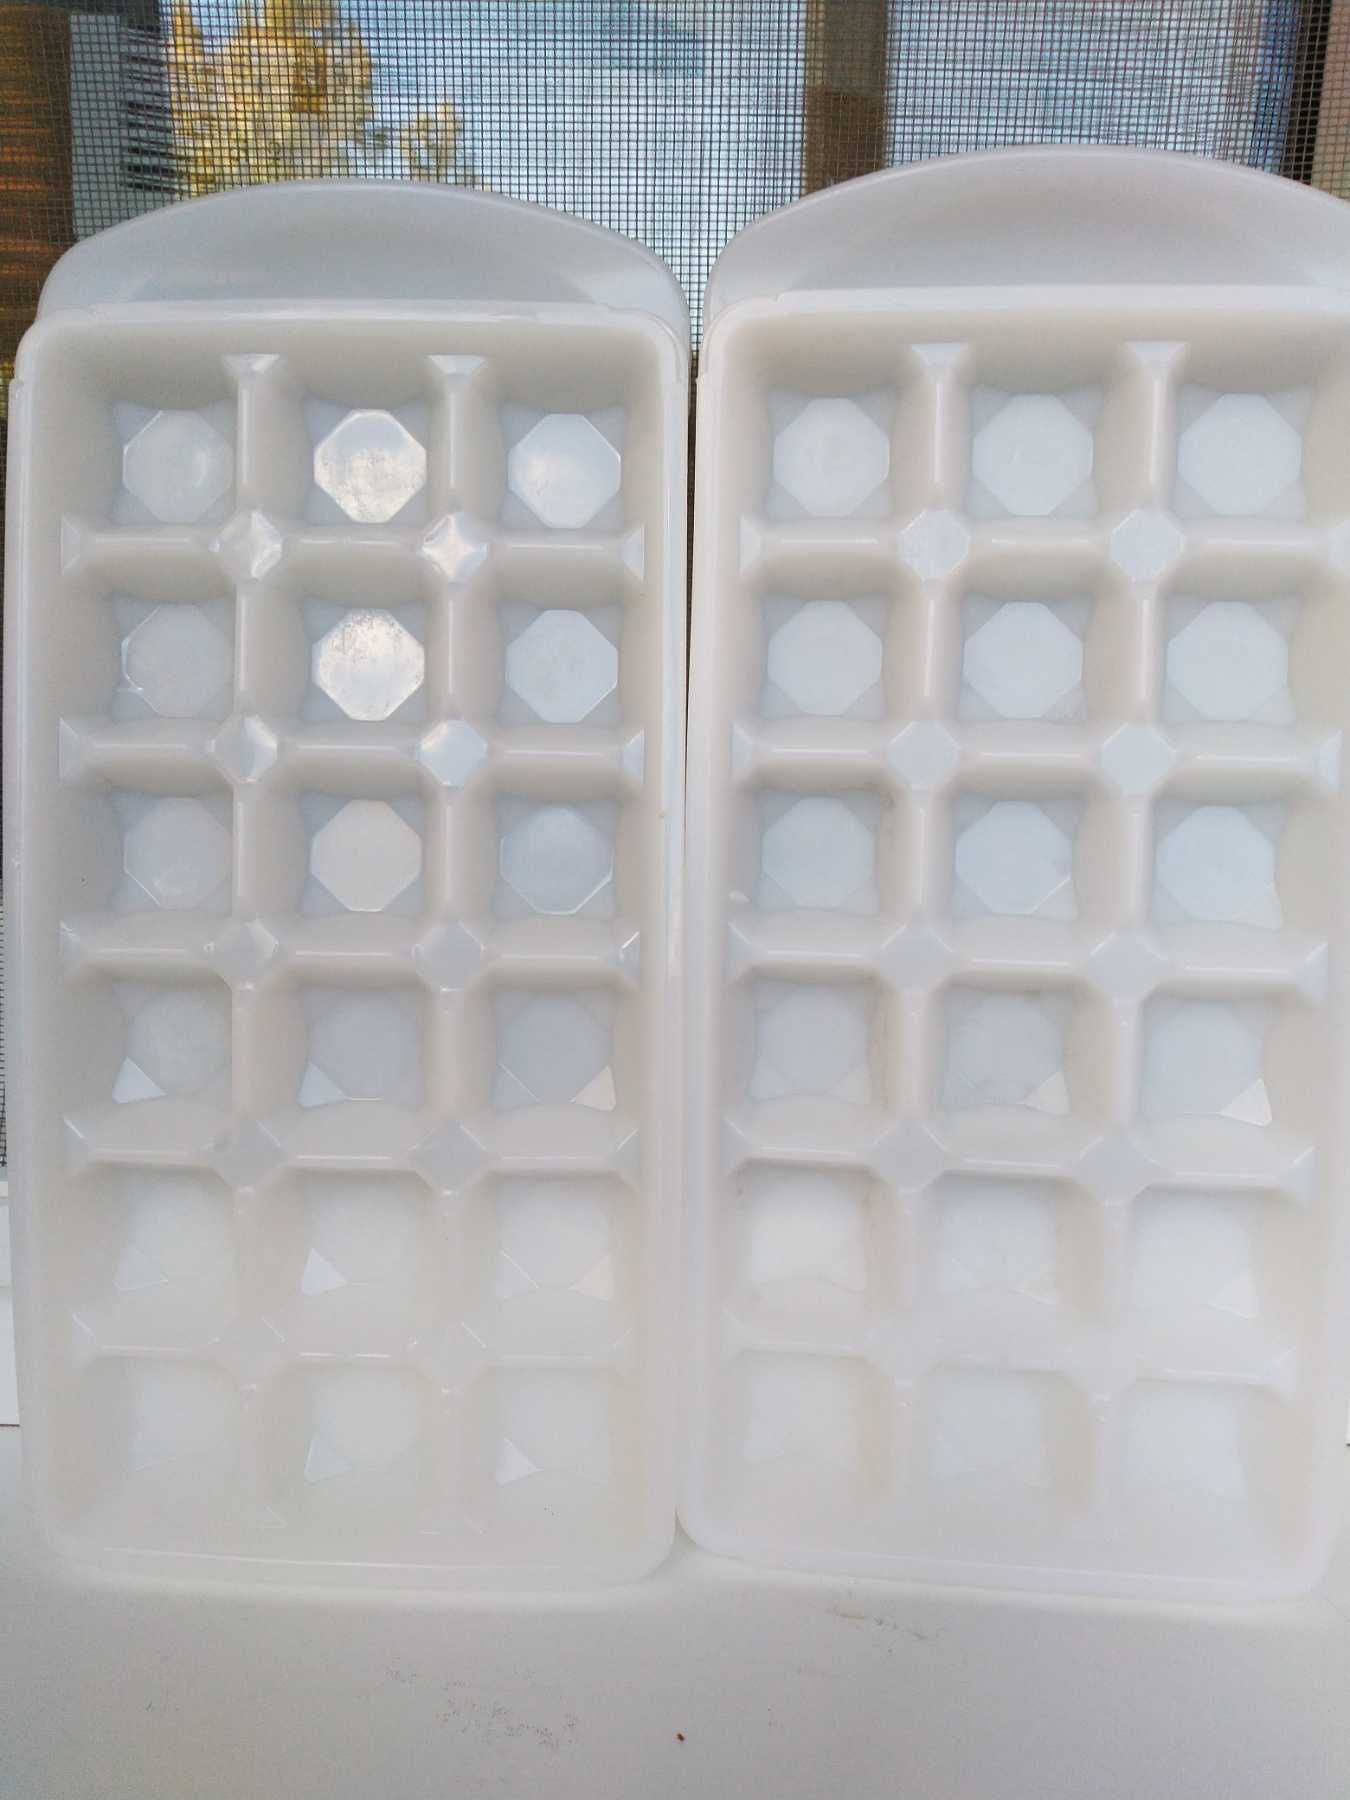 ледница для холодильника ,пластик,фома для льда,18 кубиков